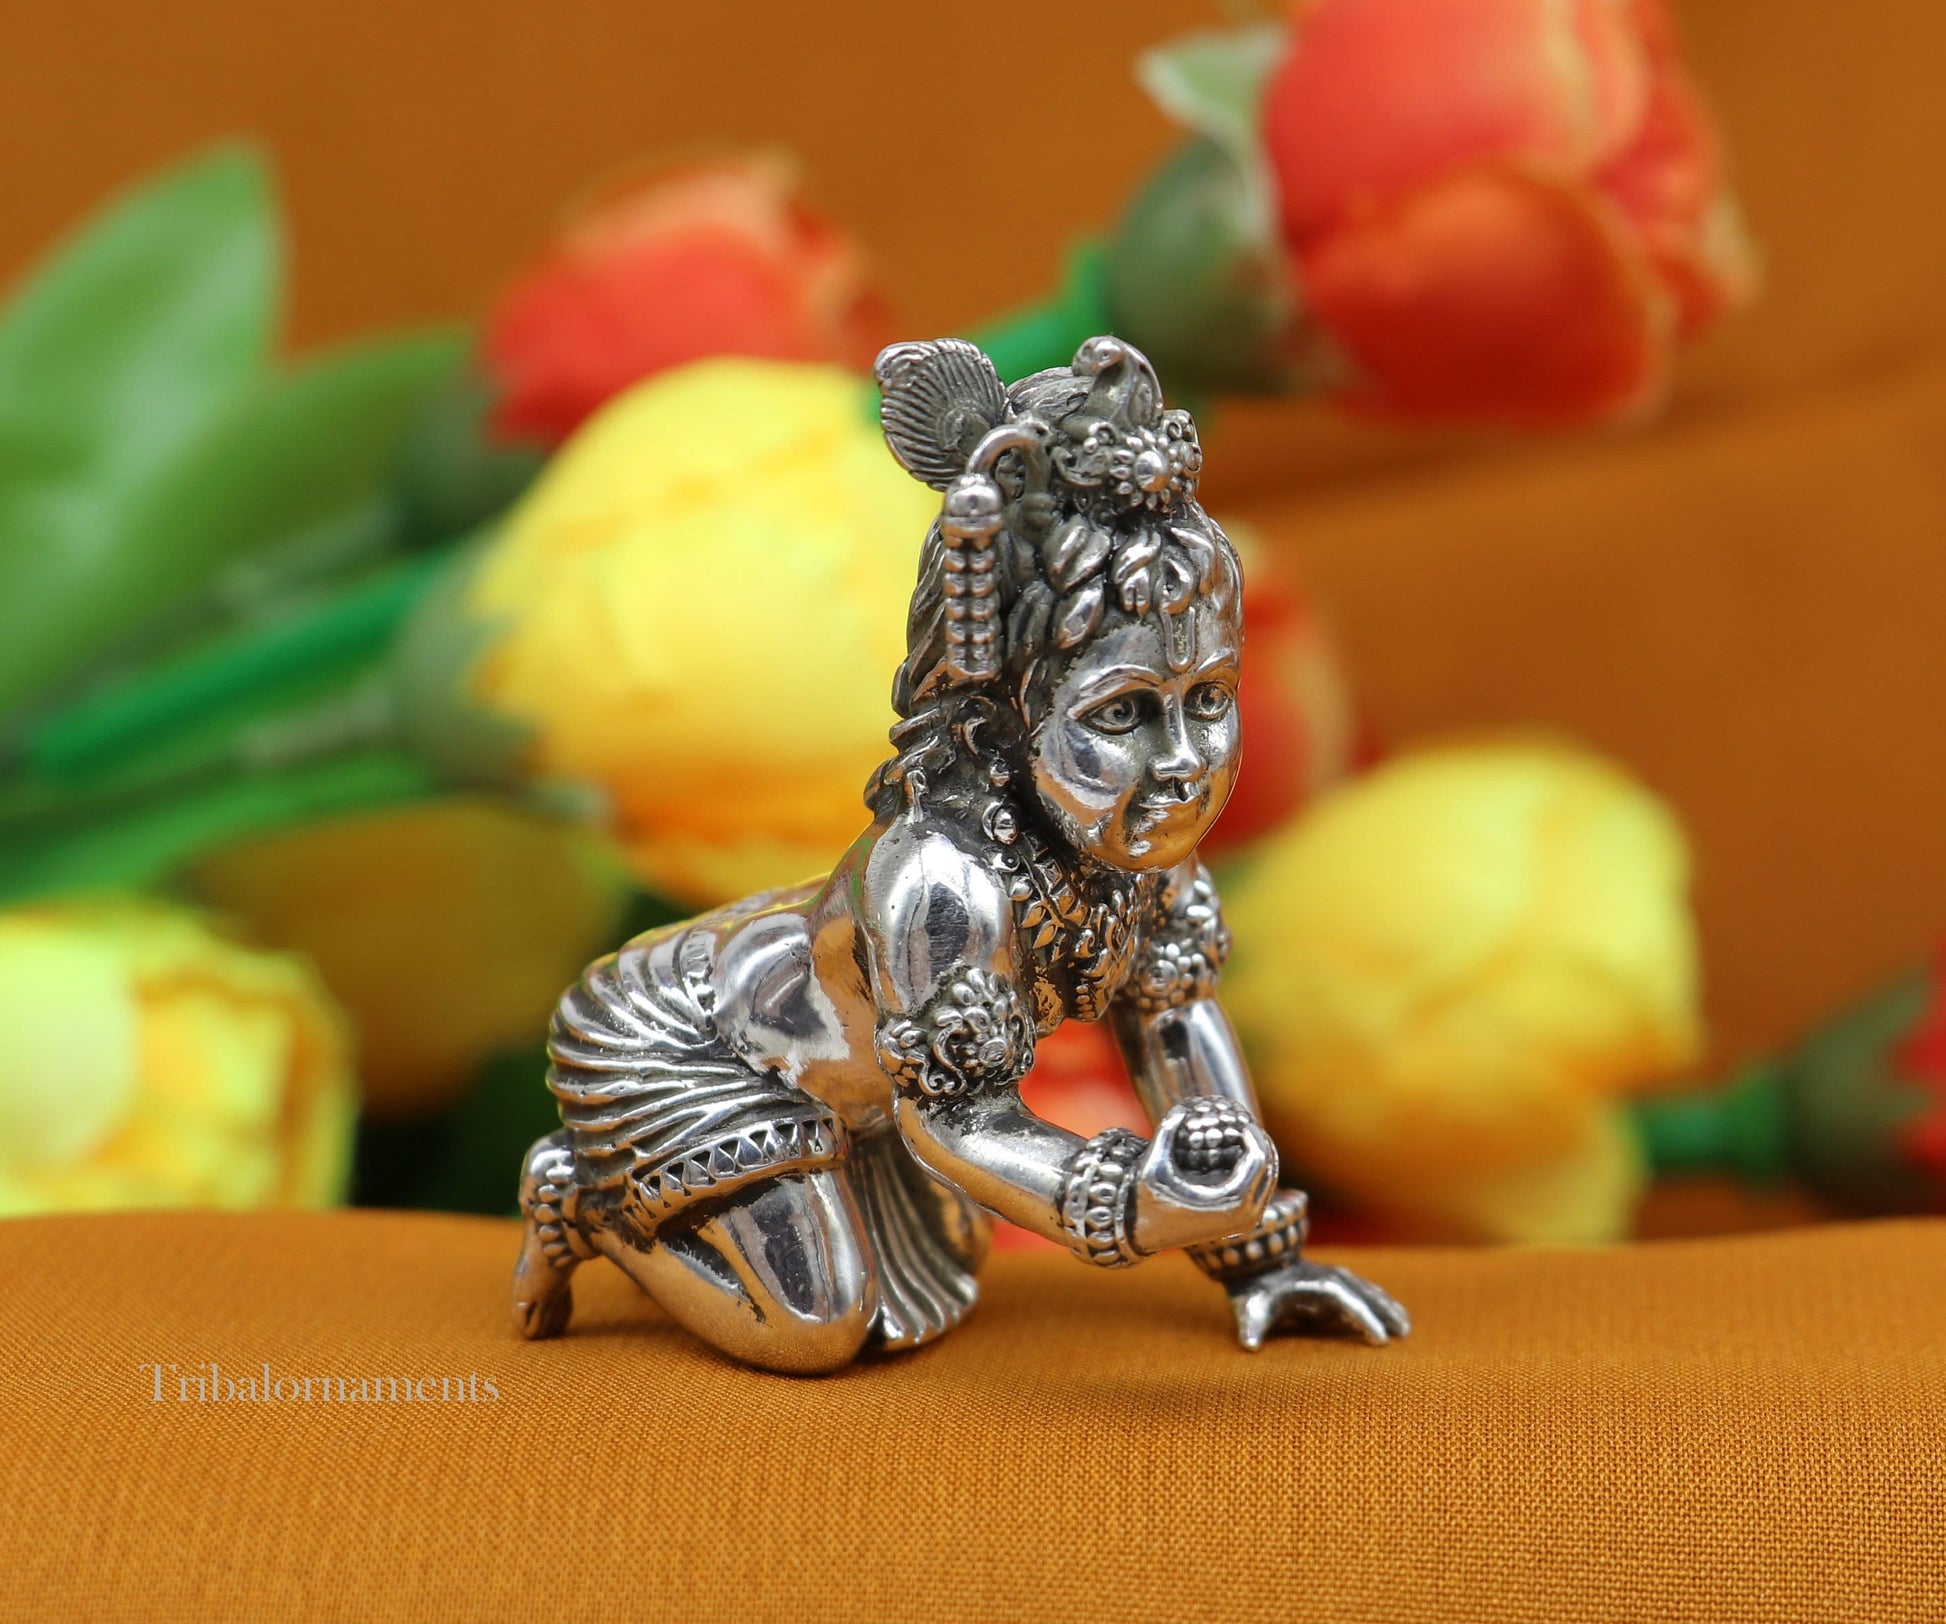 2" 925 silver handmade idol god little Krishna, Laddu Gopal, crawling Krishna small statue sculpture temple puja art, Diwali gift art224 - TRIBAL ORNAMENTS